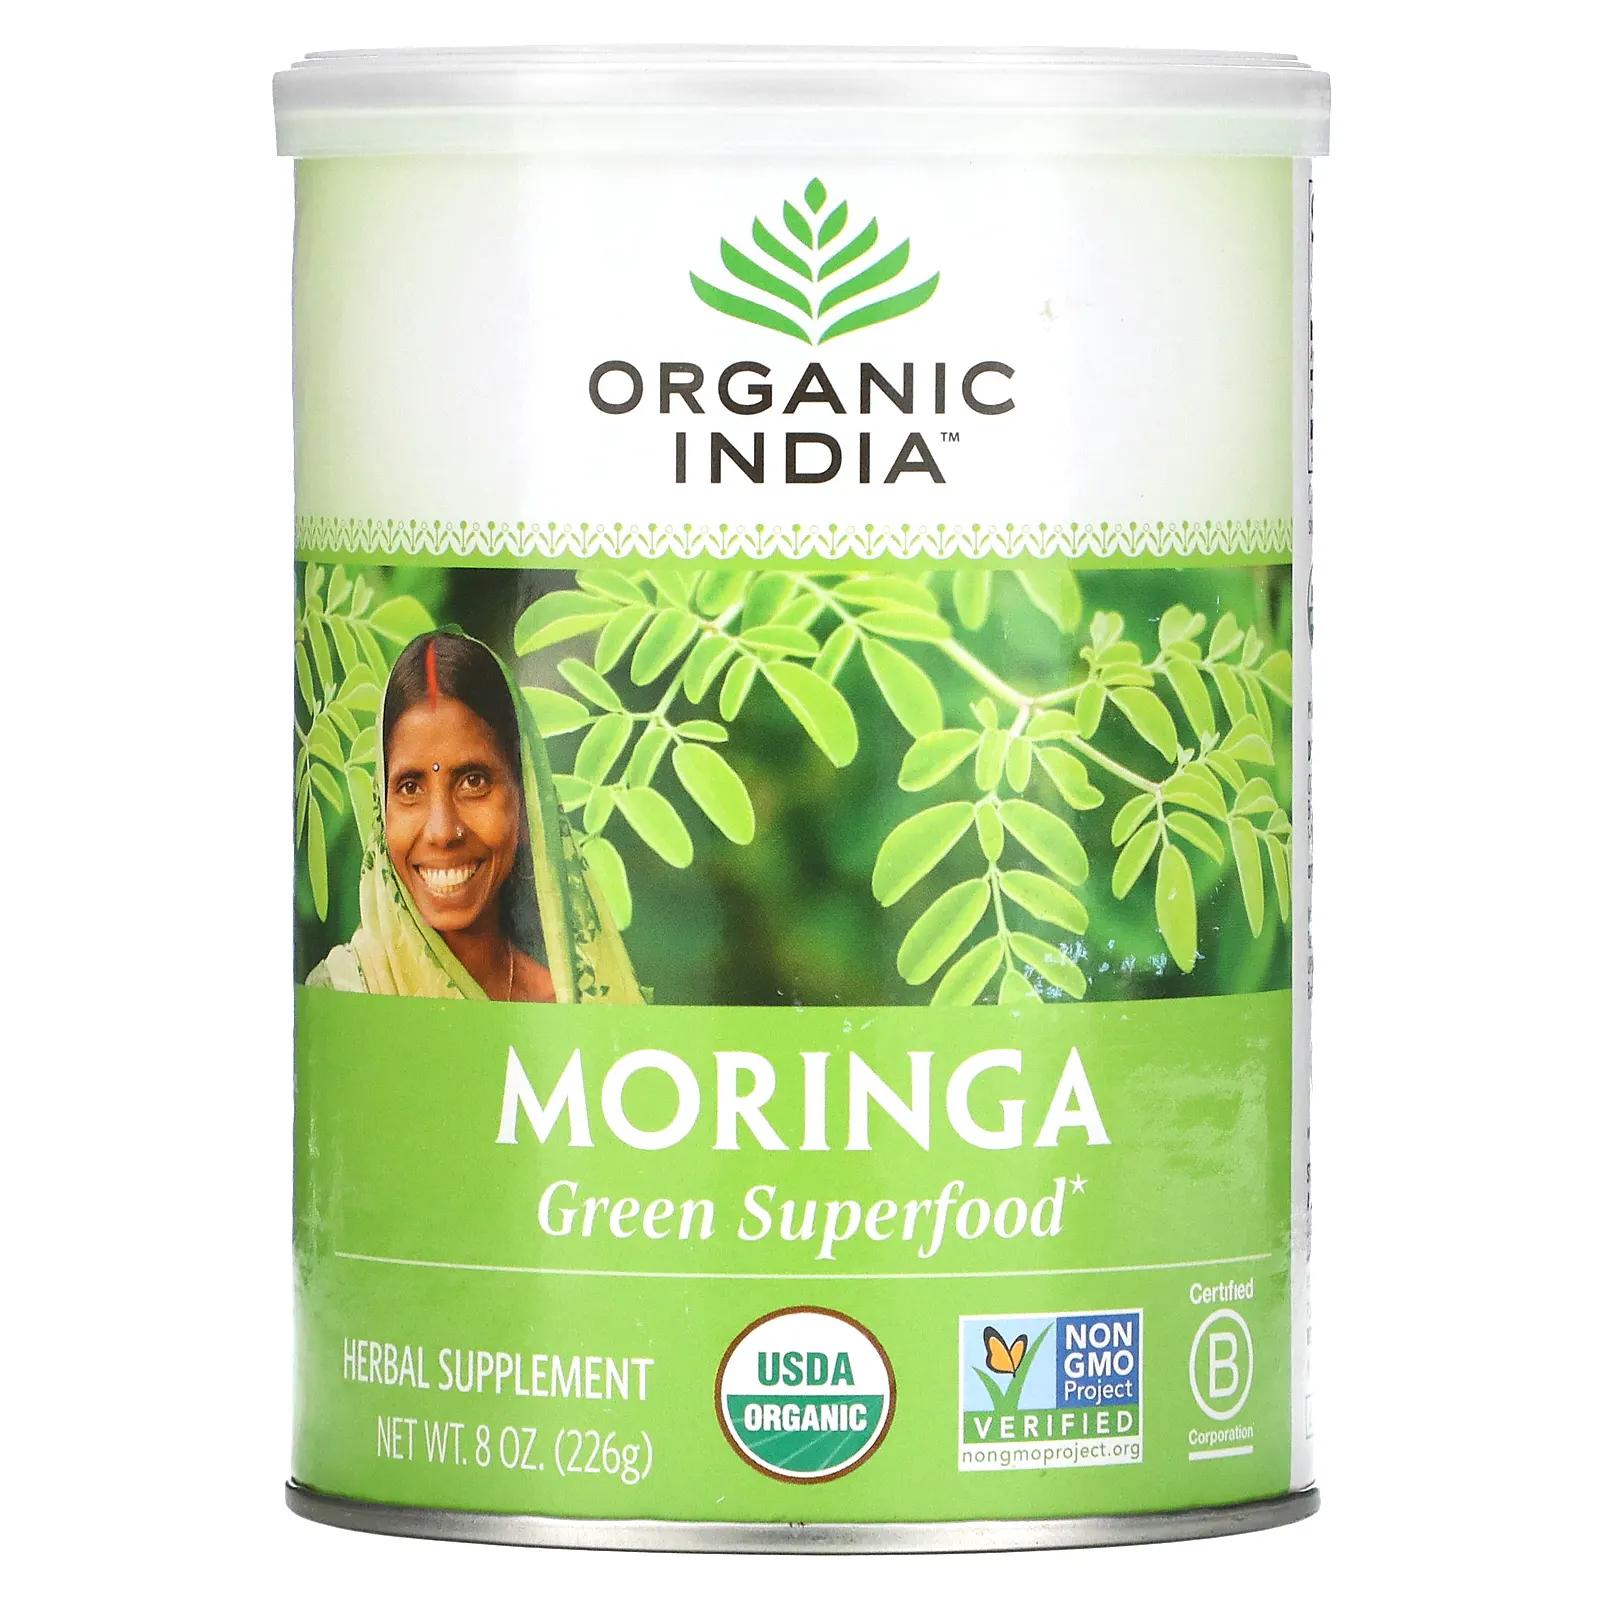 Organic India Порошок листов органической моринги 8 унц. (226 г) цена и фото